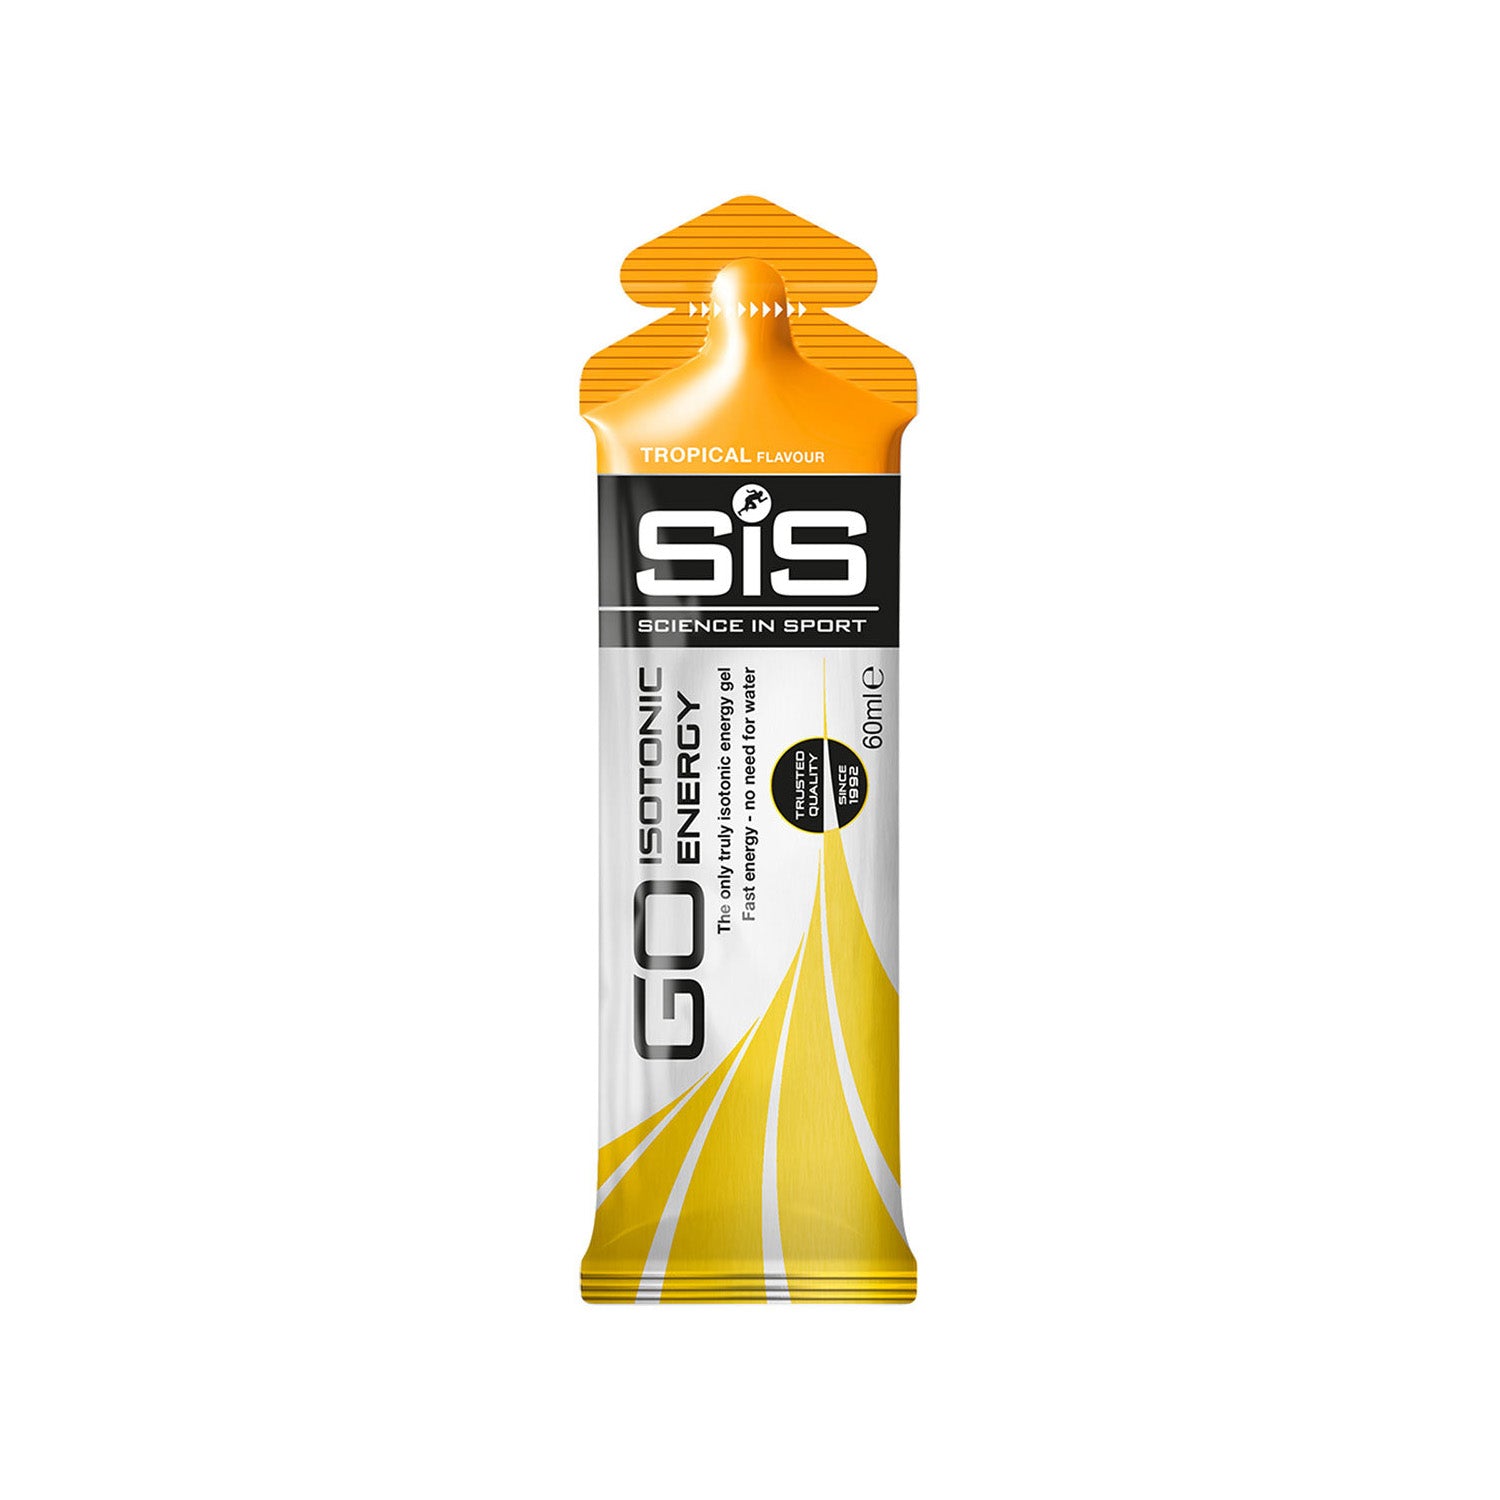 Science in Sport - SiS energy gel